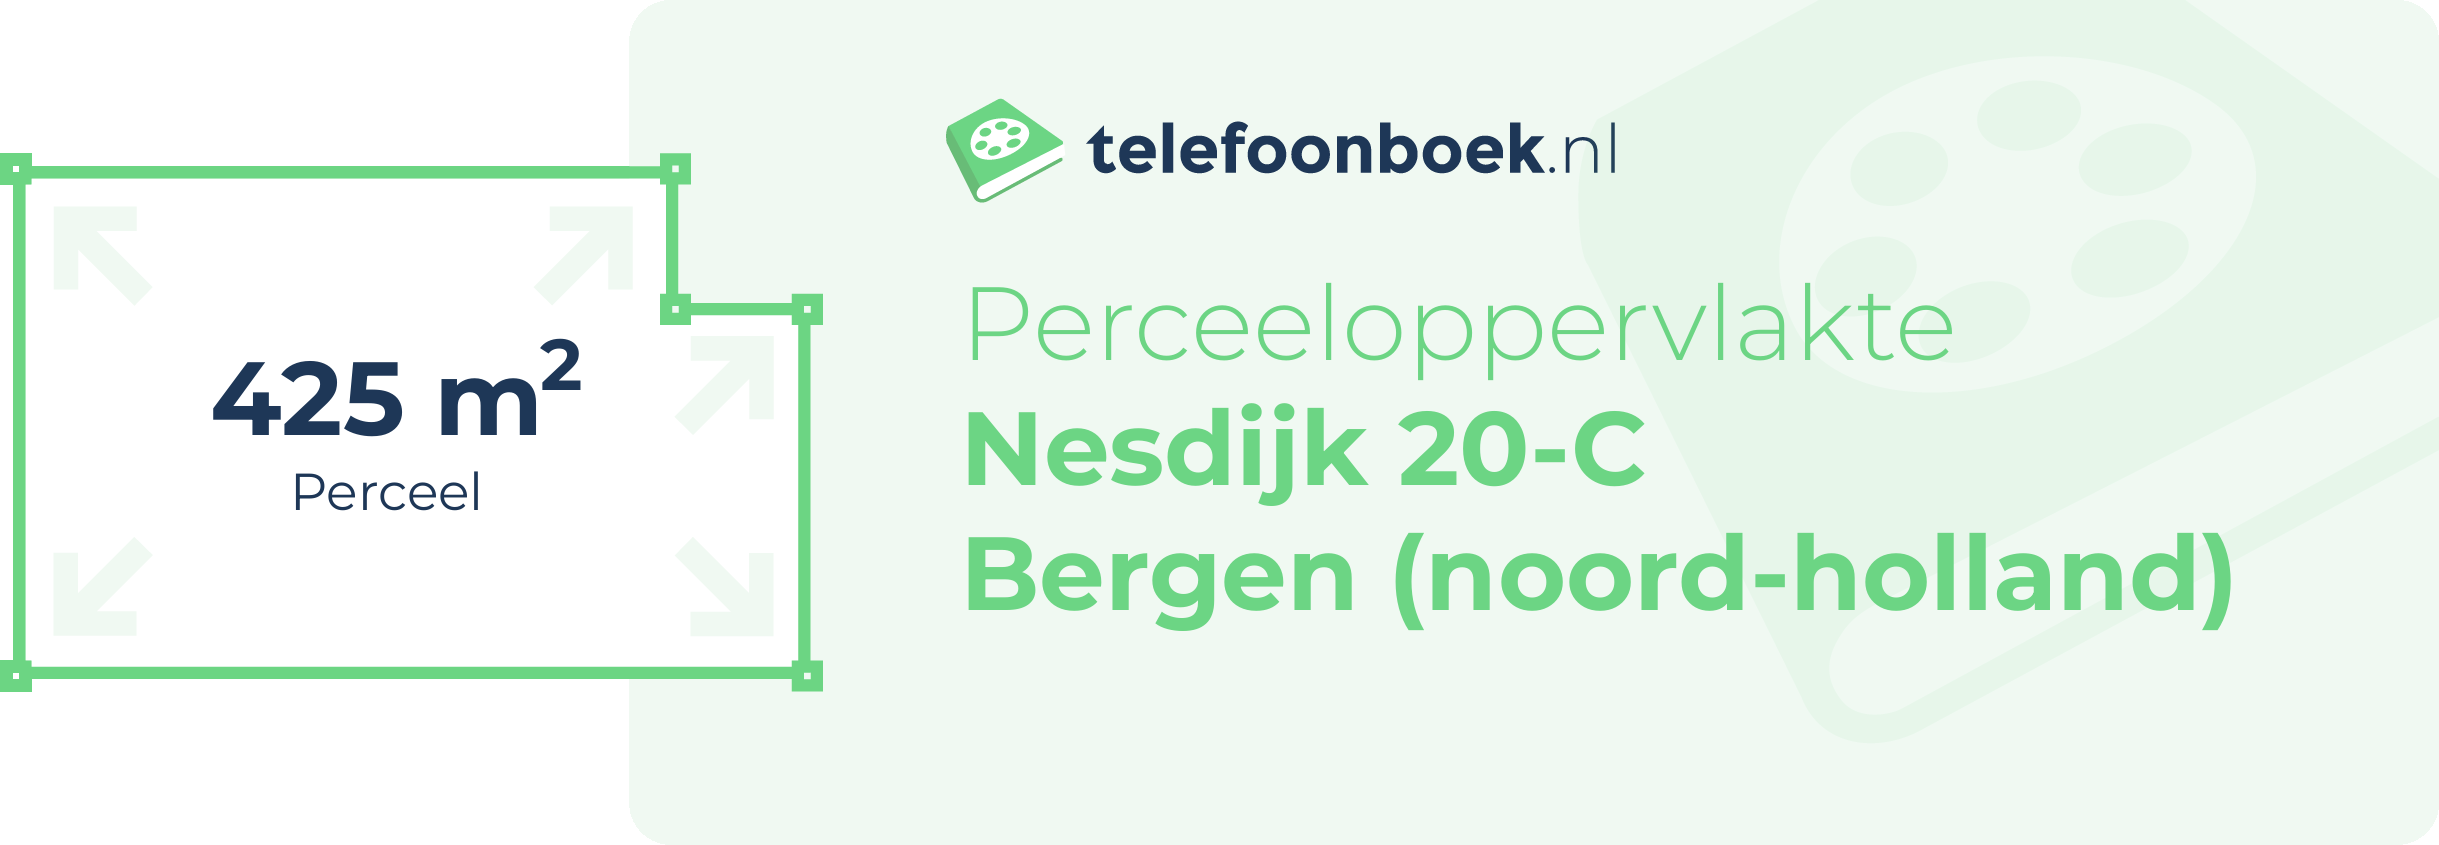 Perceeloppervlakte Nesdijk 20-C Bergen (Noord-Holland)